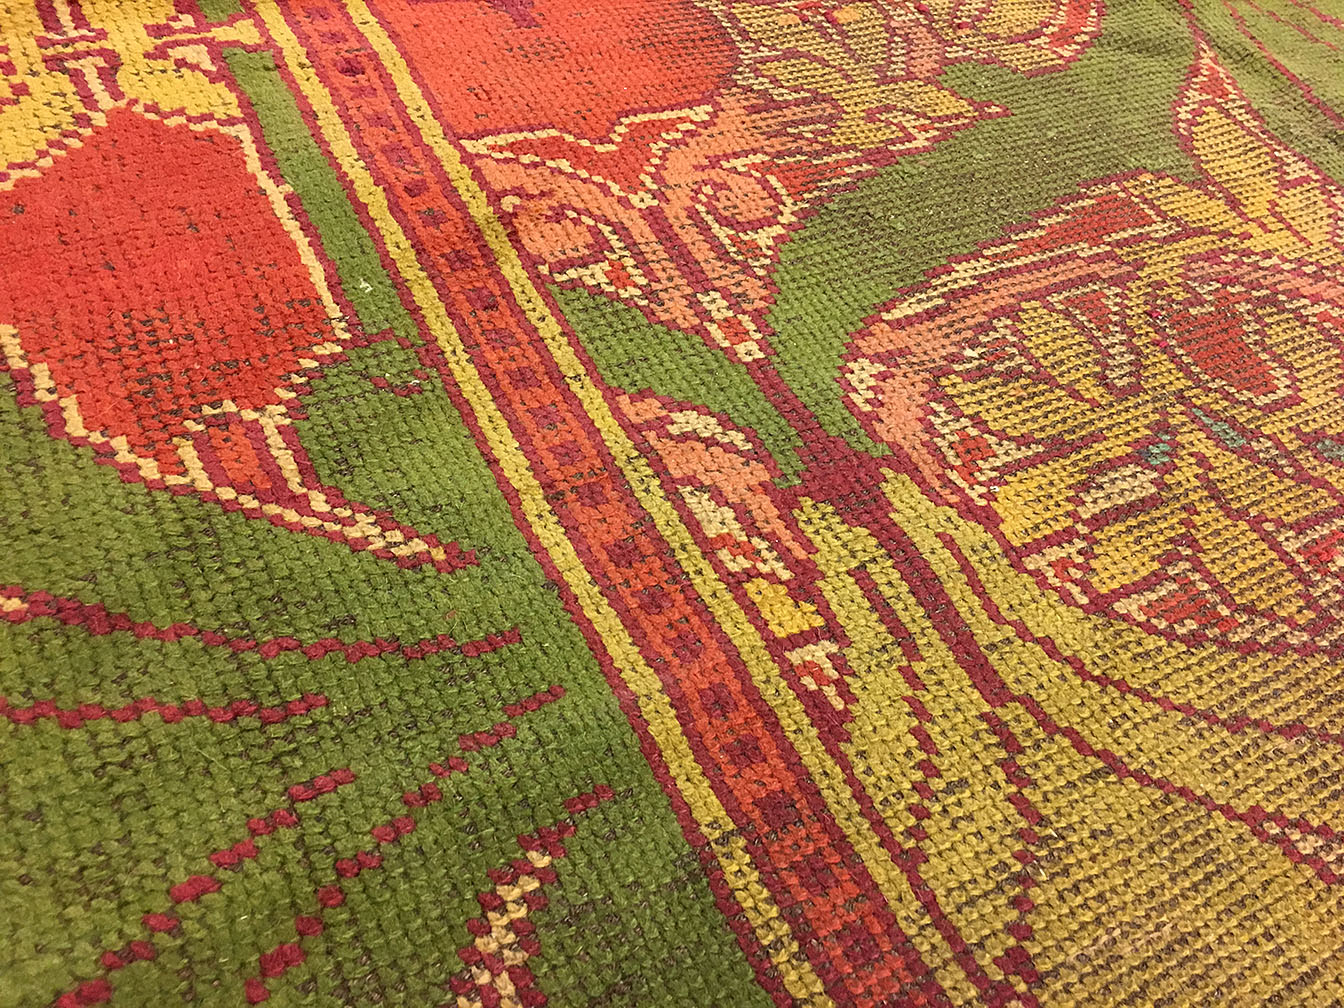 Antique donegal Carpet - # 53775